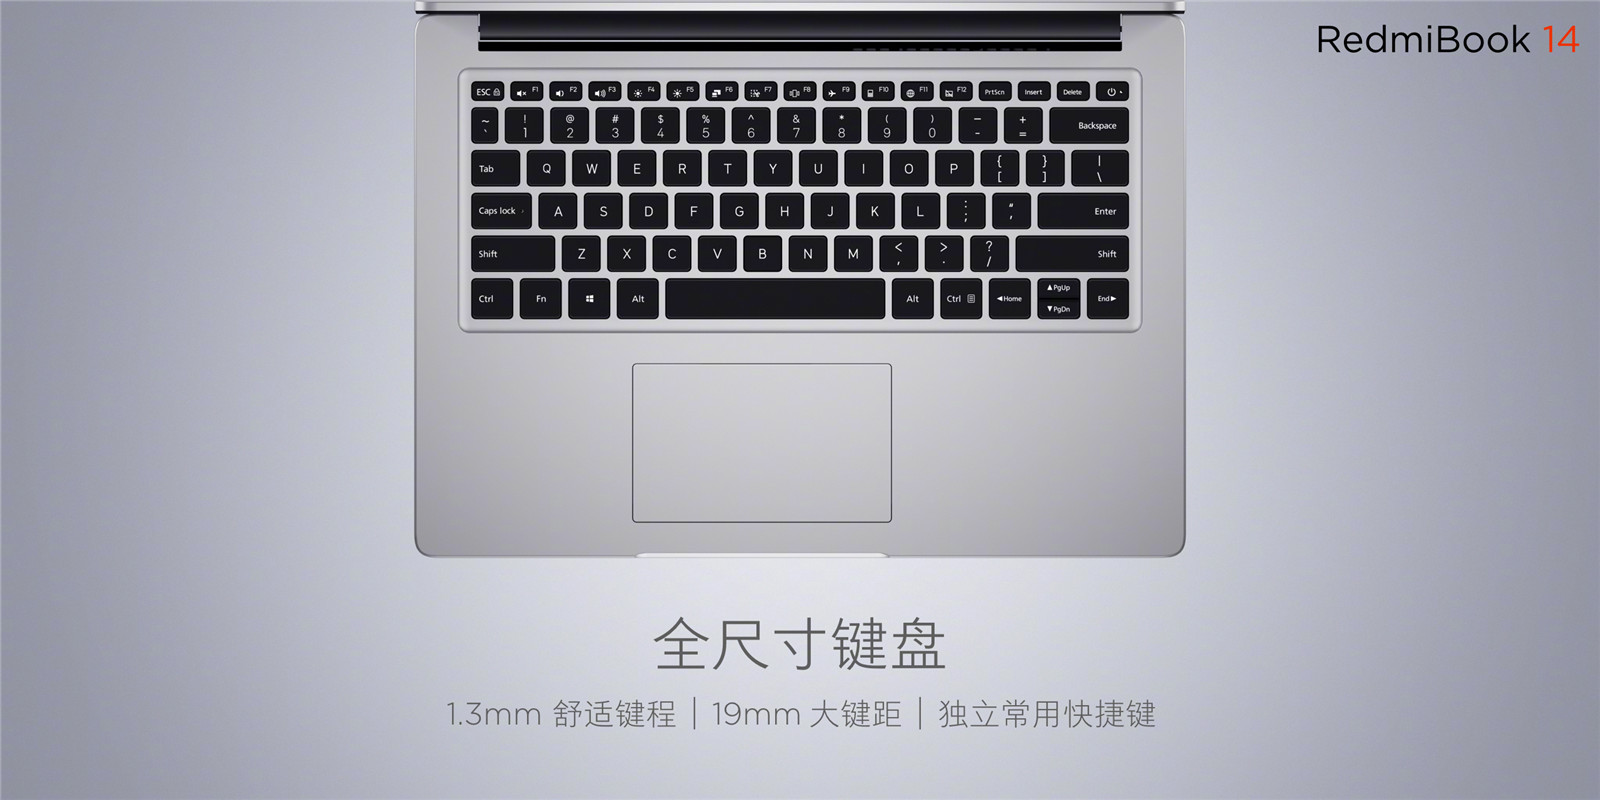 红米笔记本RedmiBook 14发布：3999元起